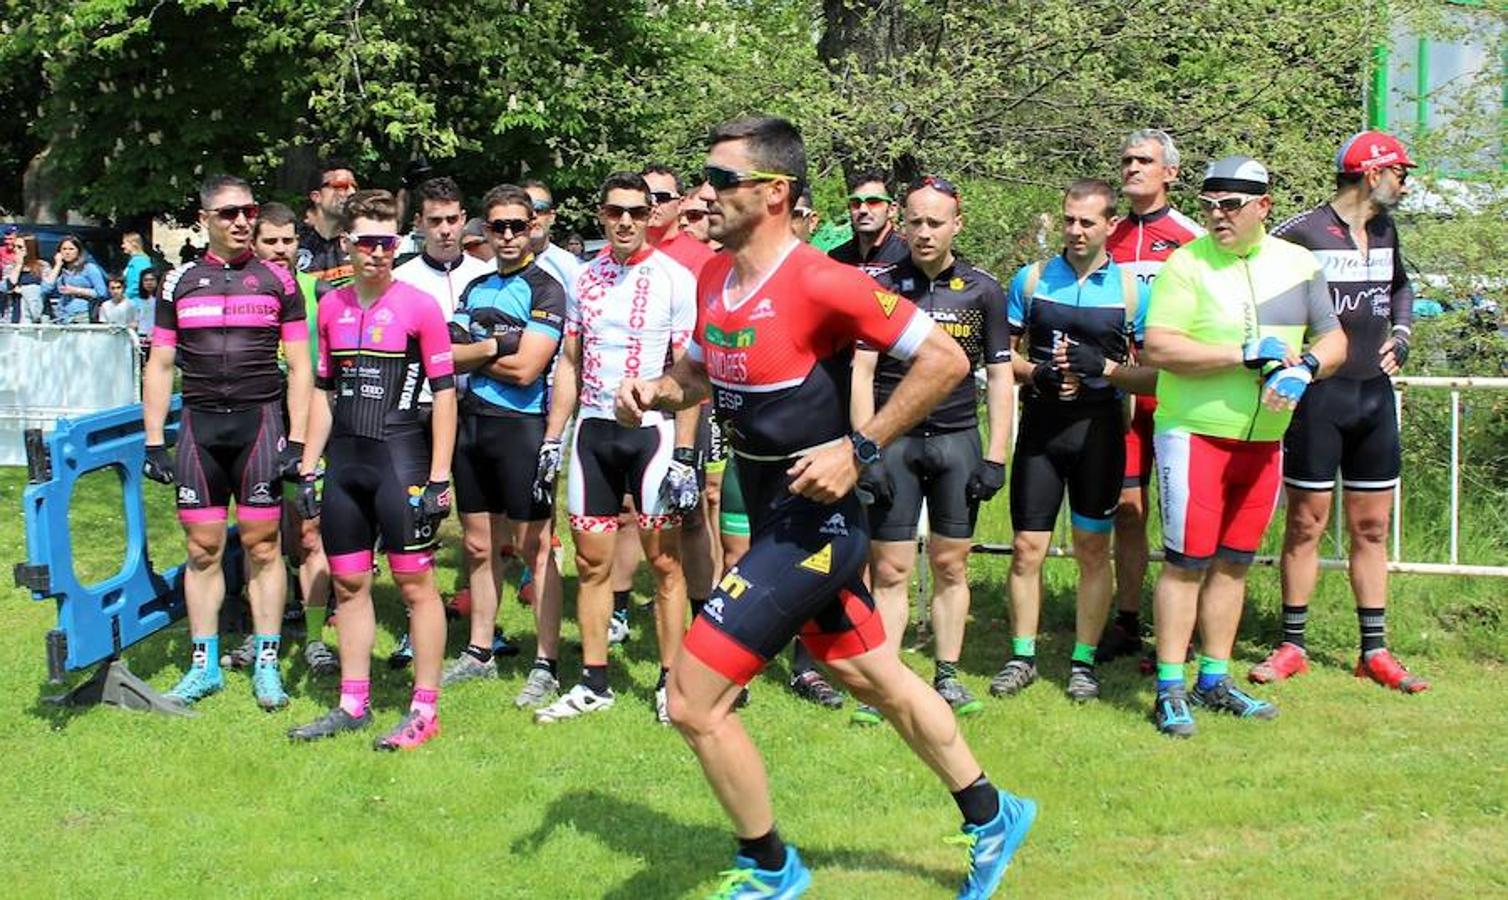 Imágenes correspondientes al Duatlón Cross Carrasquedo que se ha celebrao en Grañón y que ha sido valedero para el Campeonato de La Rioja de la modalidad. El día ha sido óptimo para la celebración de la prueba deportiva sobre un trazado de 6km-22km y 3km.